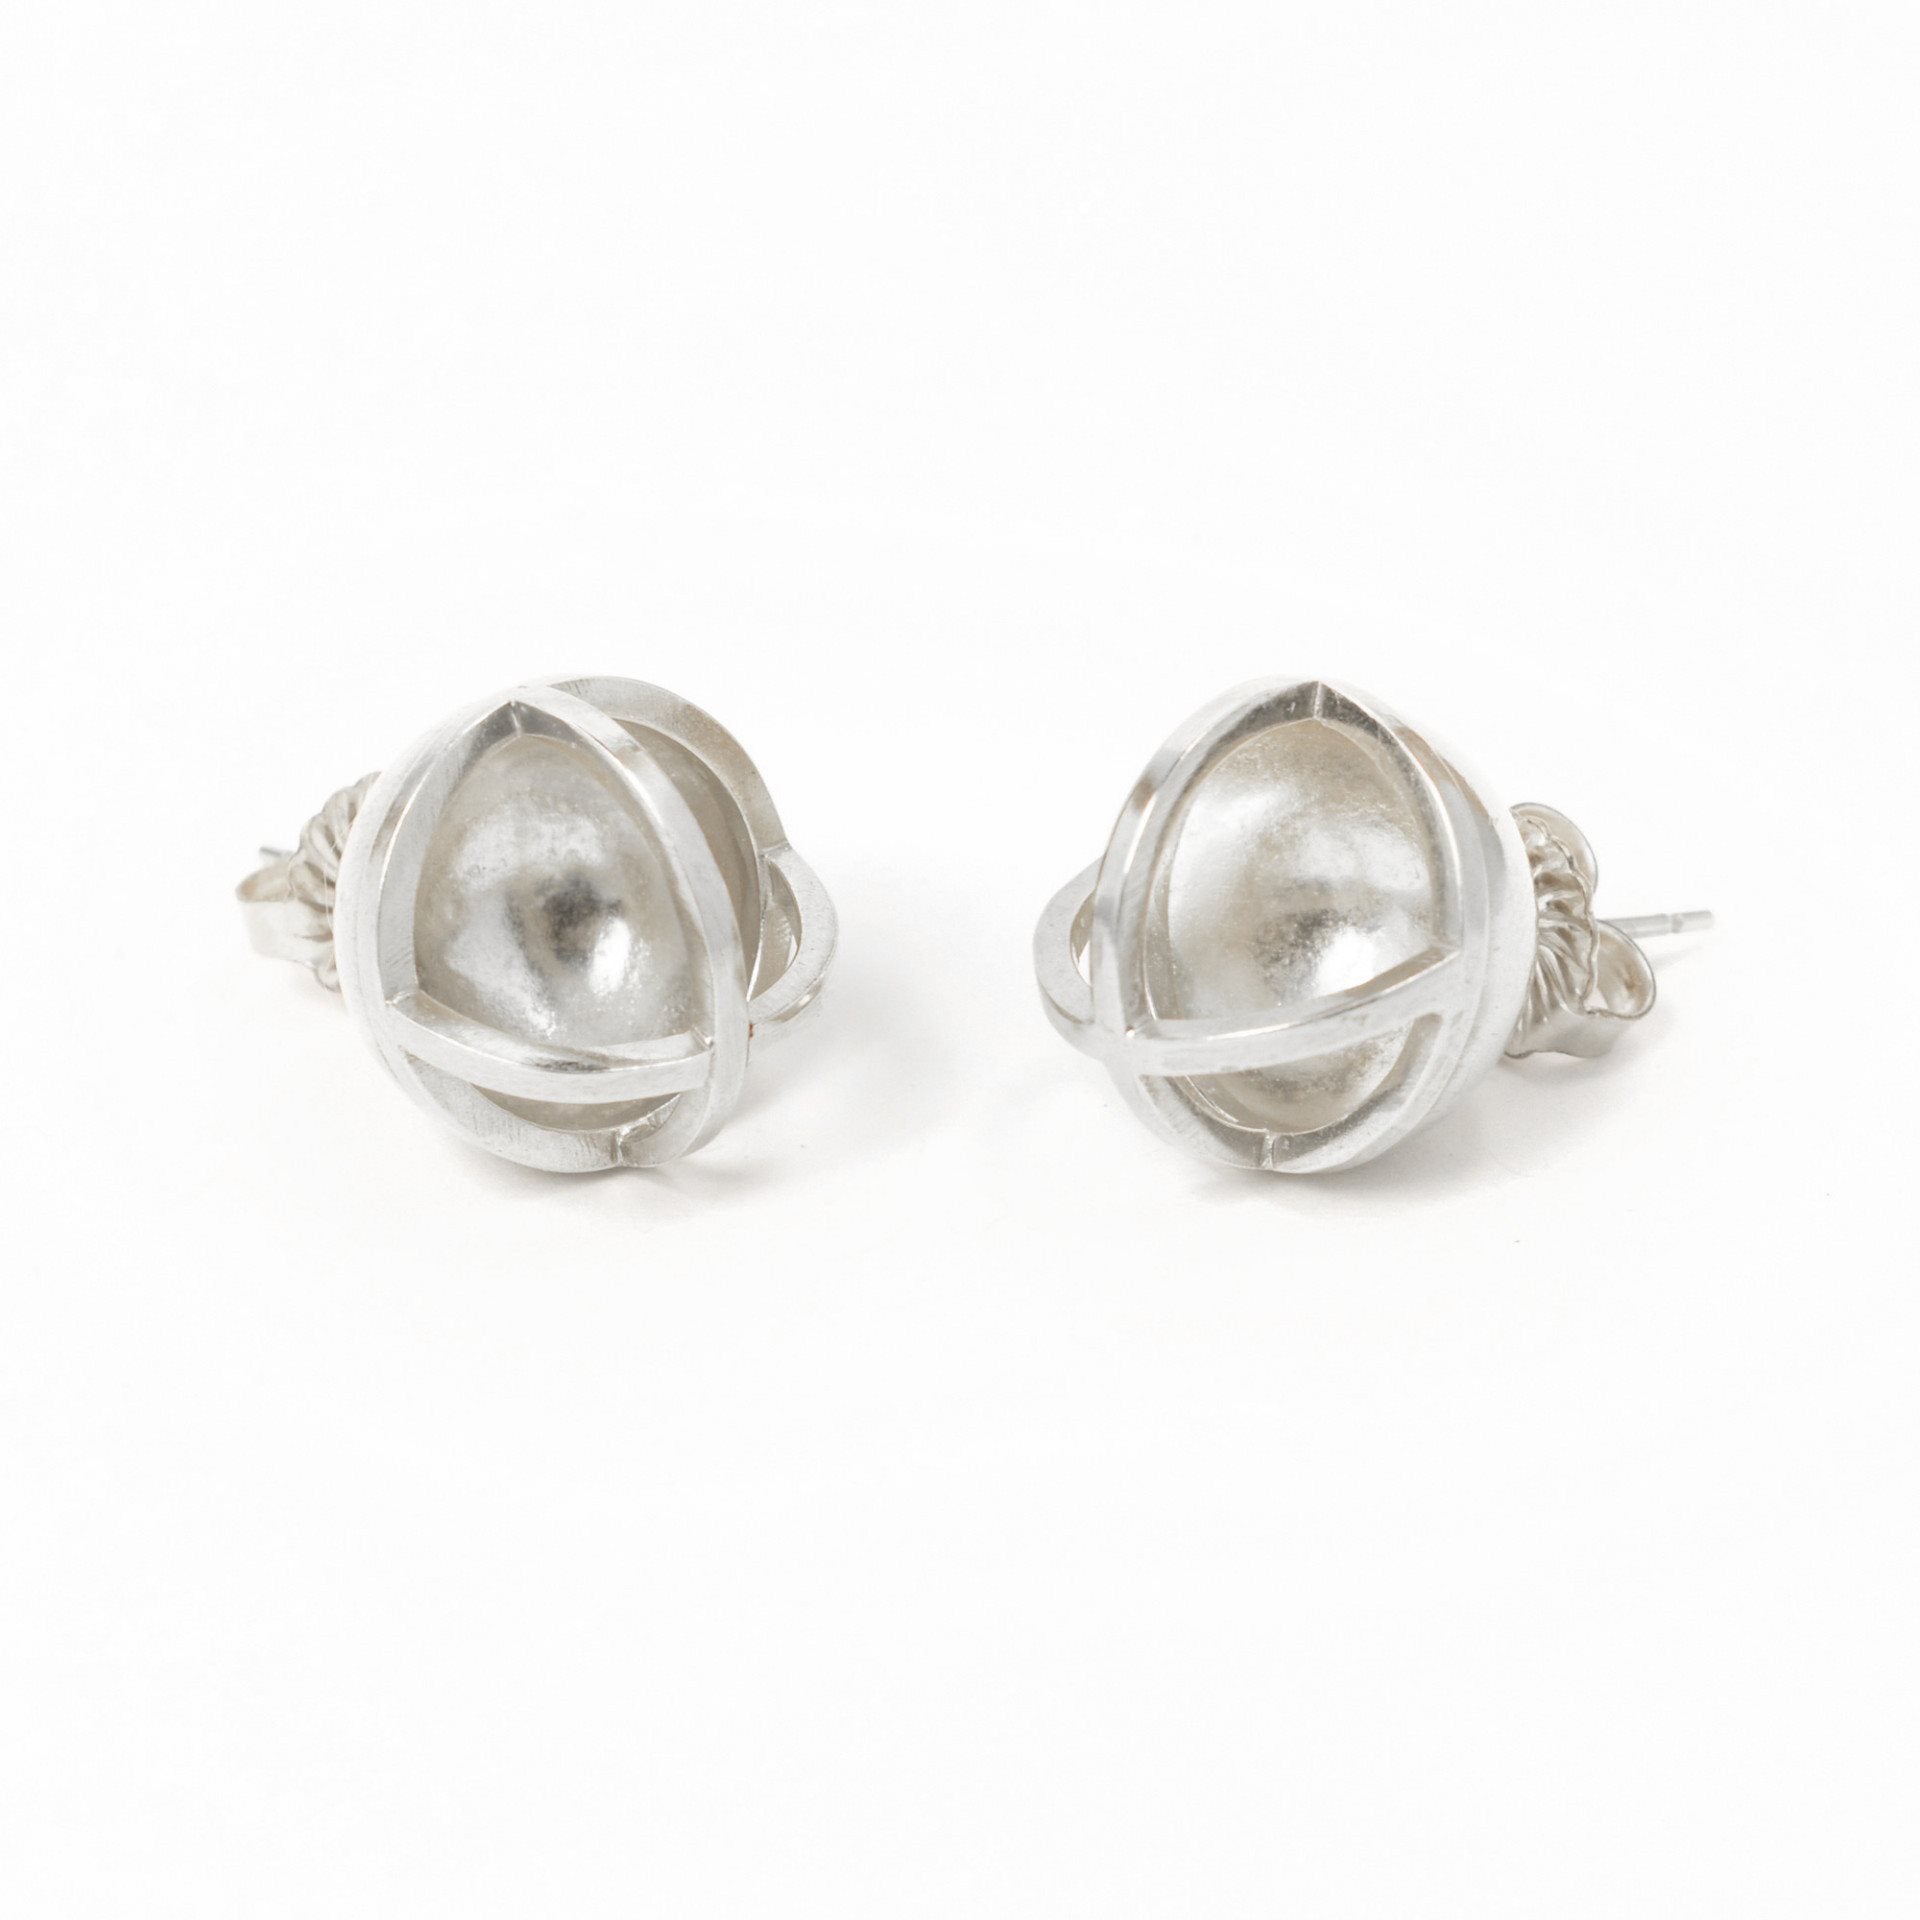 Concave Sphere Earrings